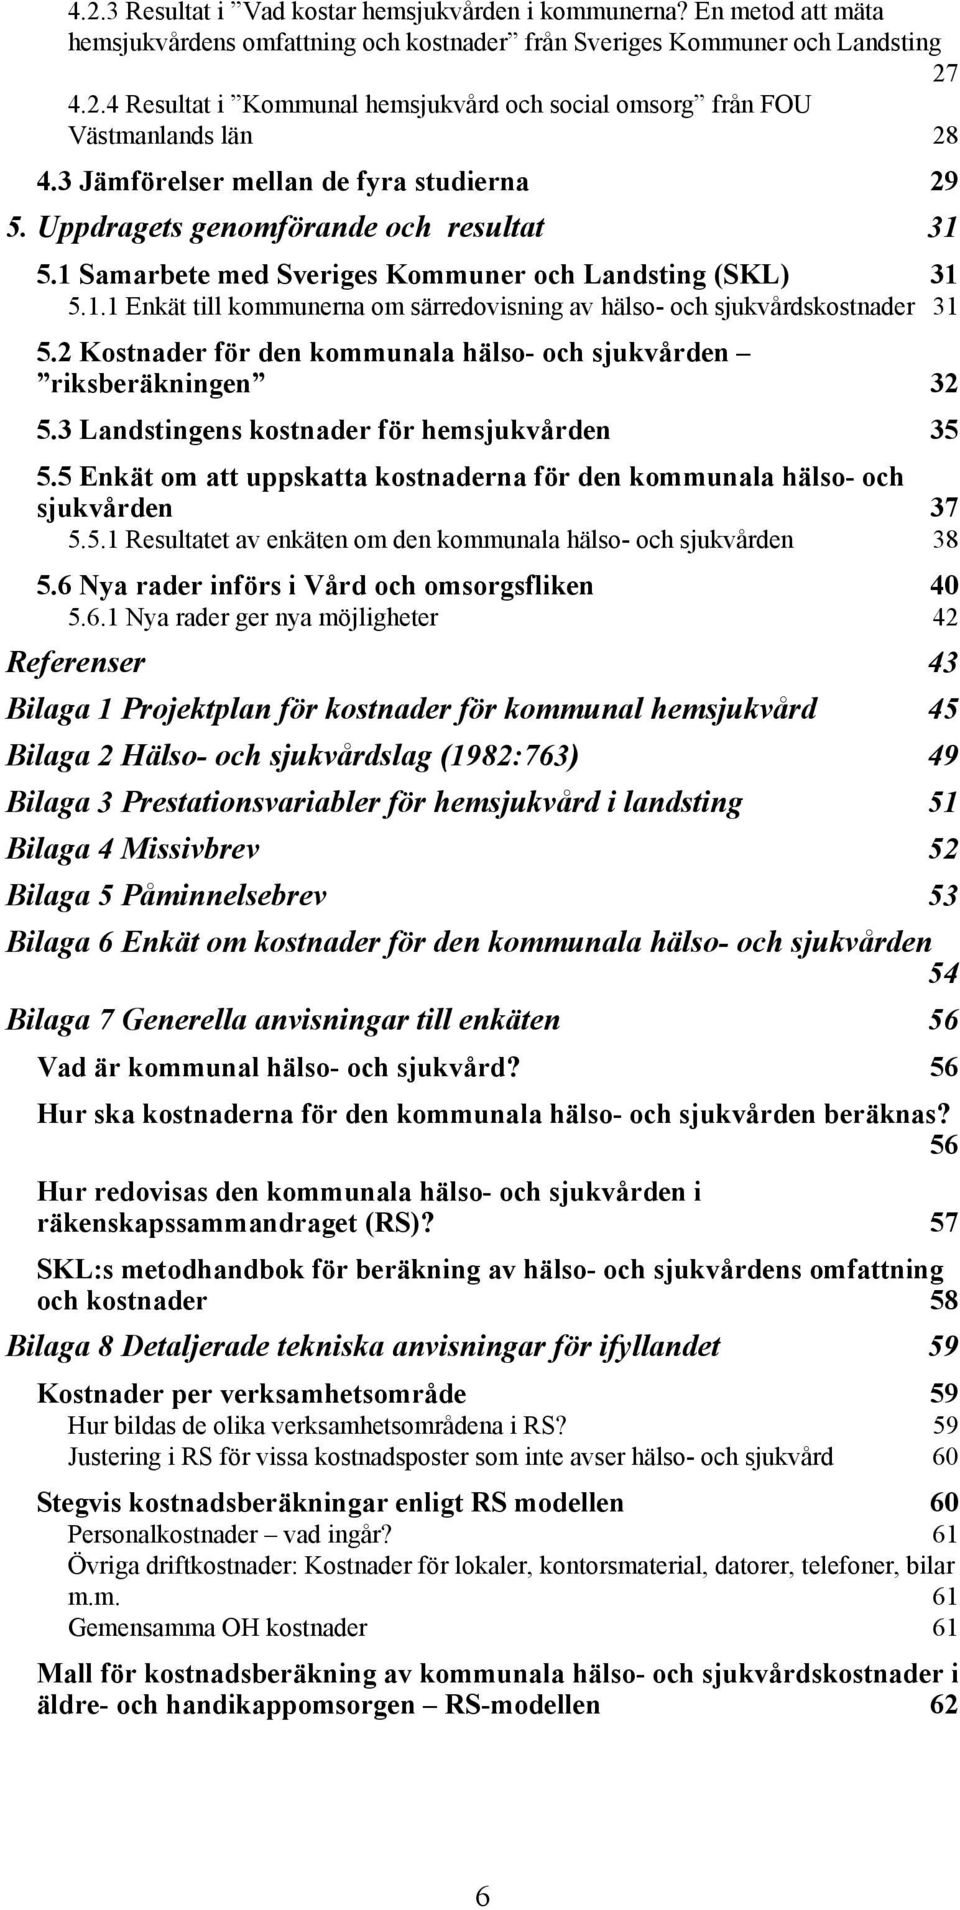 2 Kostnader för den kommunala hälso- och sjukvården riksberäkningen 32 5.3 Landstingens kostnader för hemsjukvården 35 5.